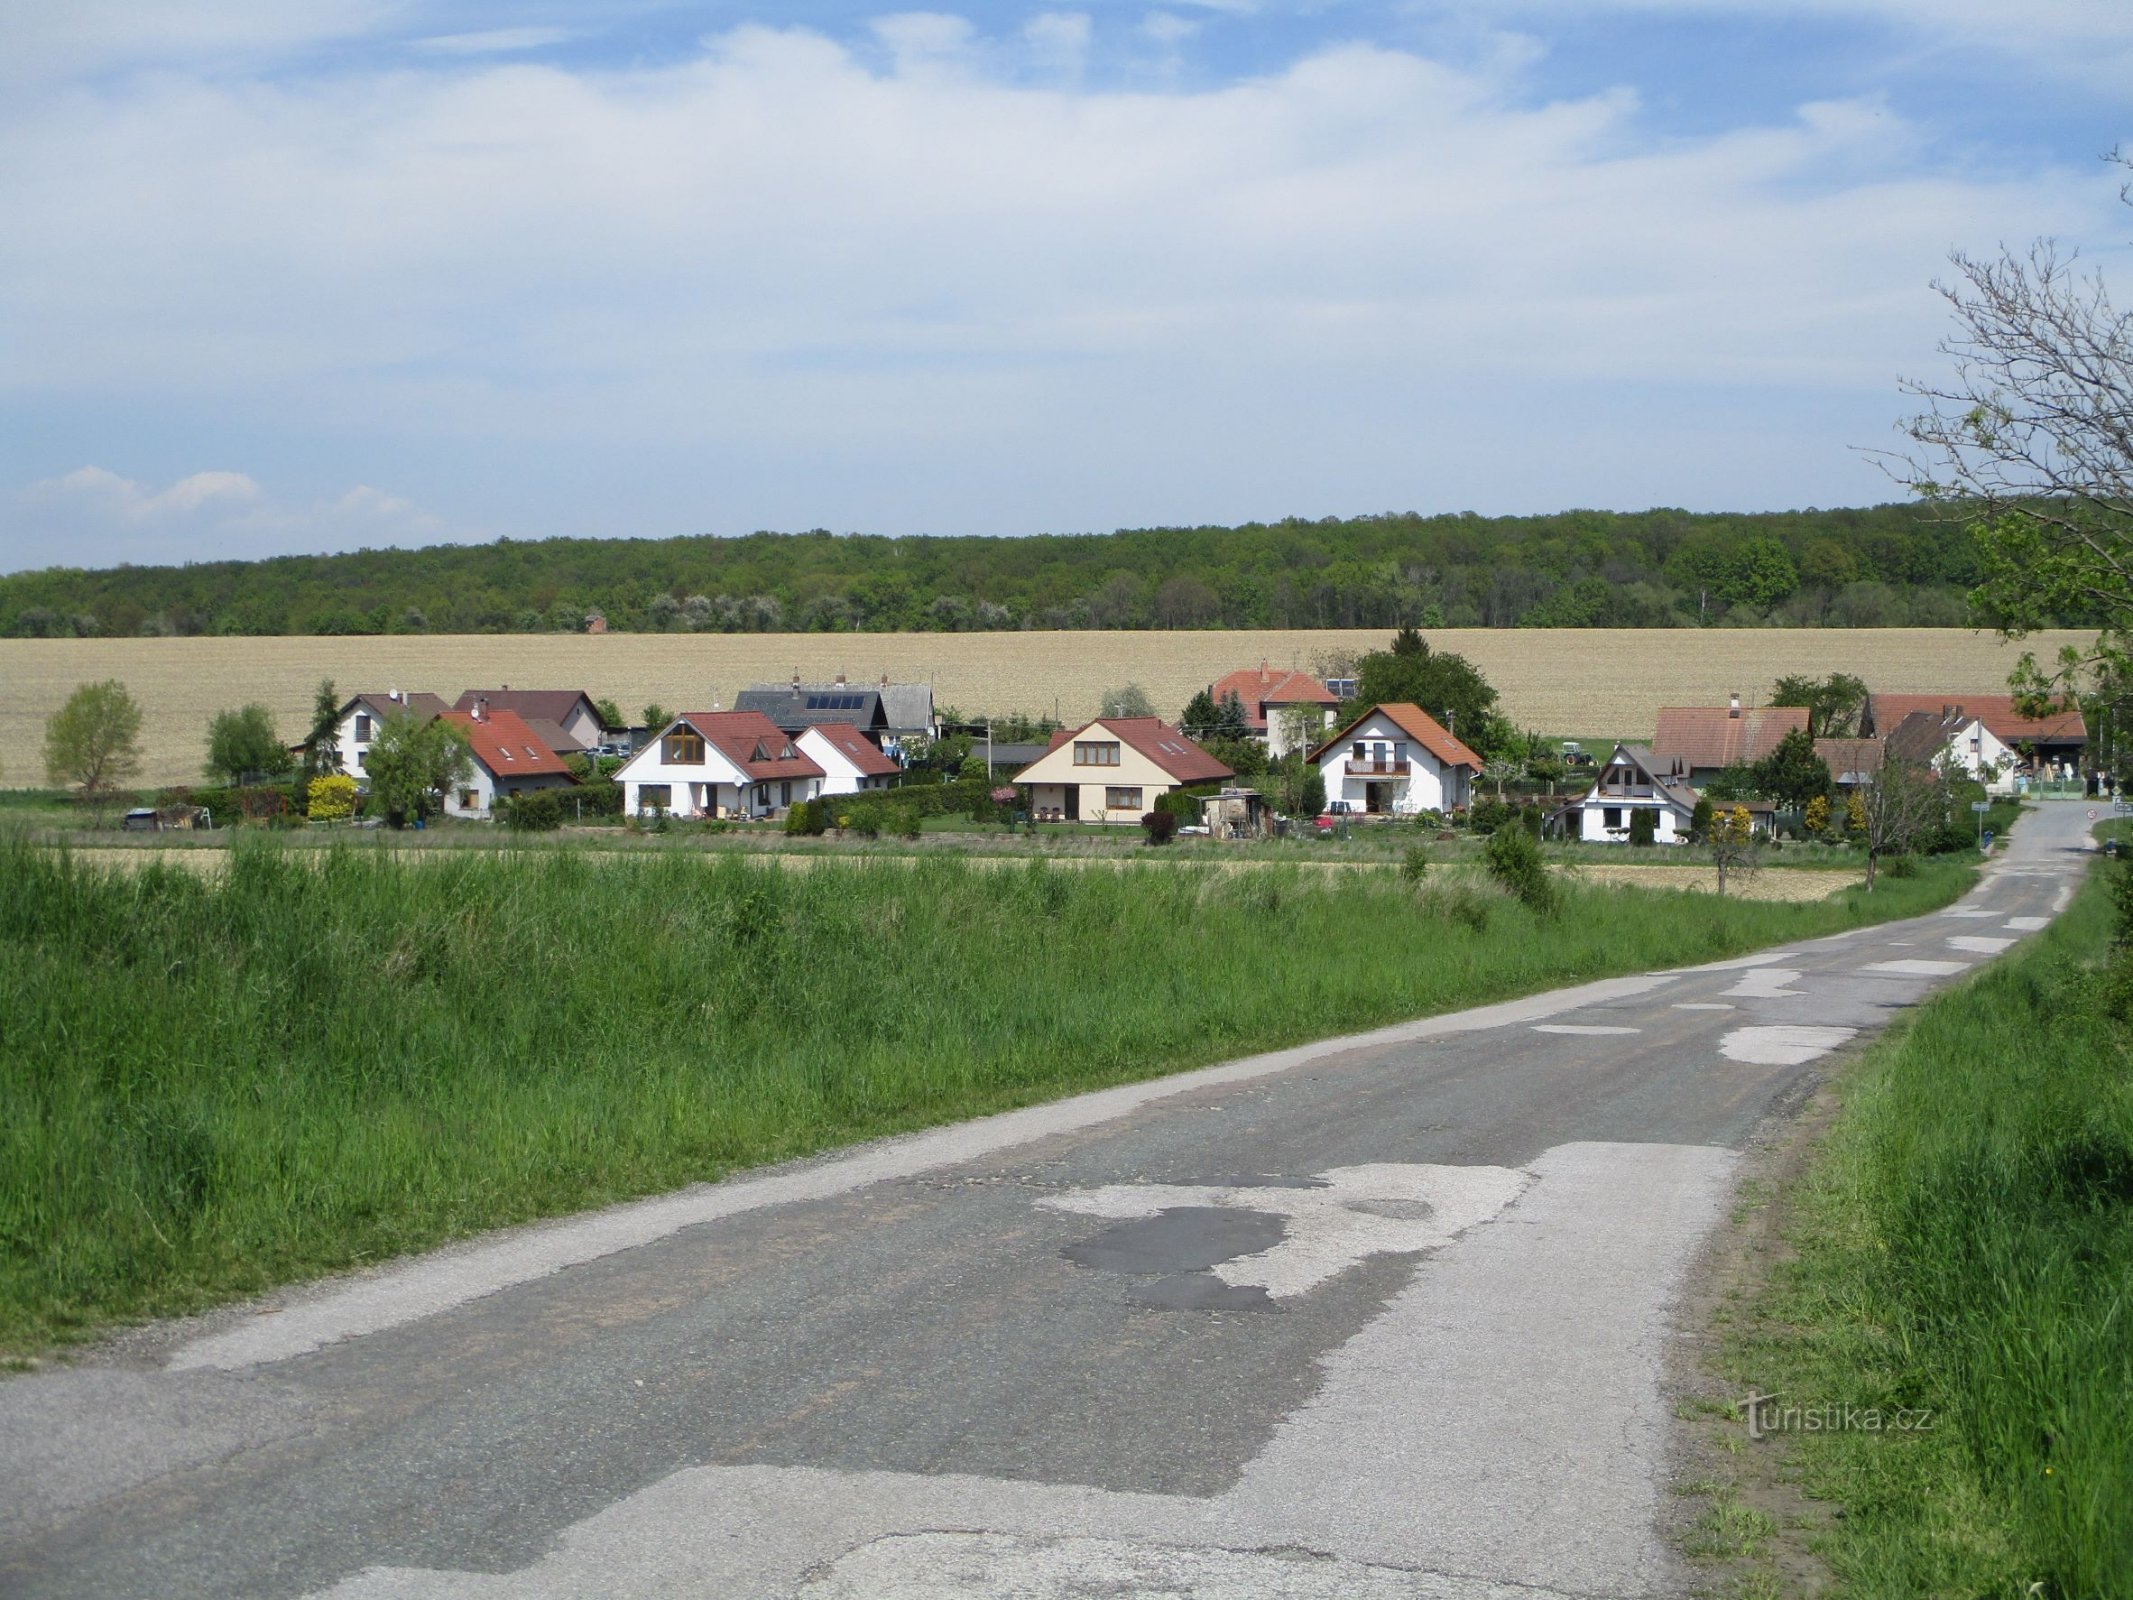 Čisteves depuis la route de Horní Dohalice (8.5.2020/XNUMX/XNUMX)